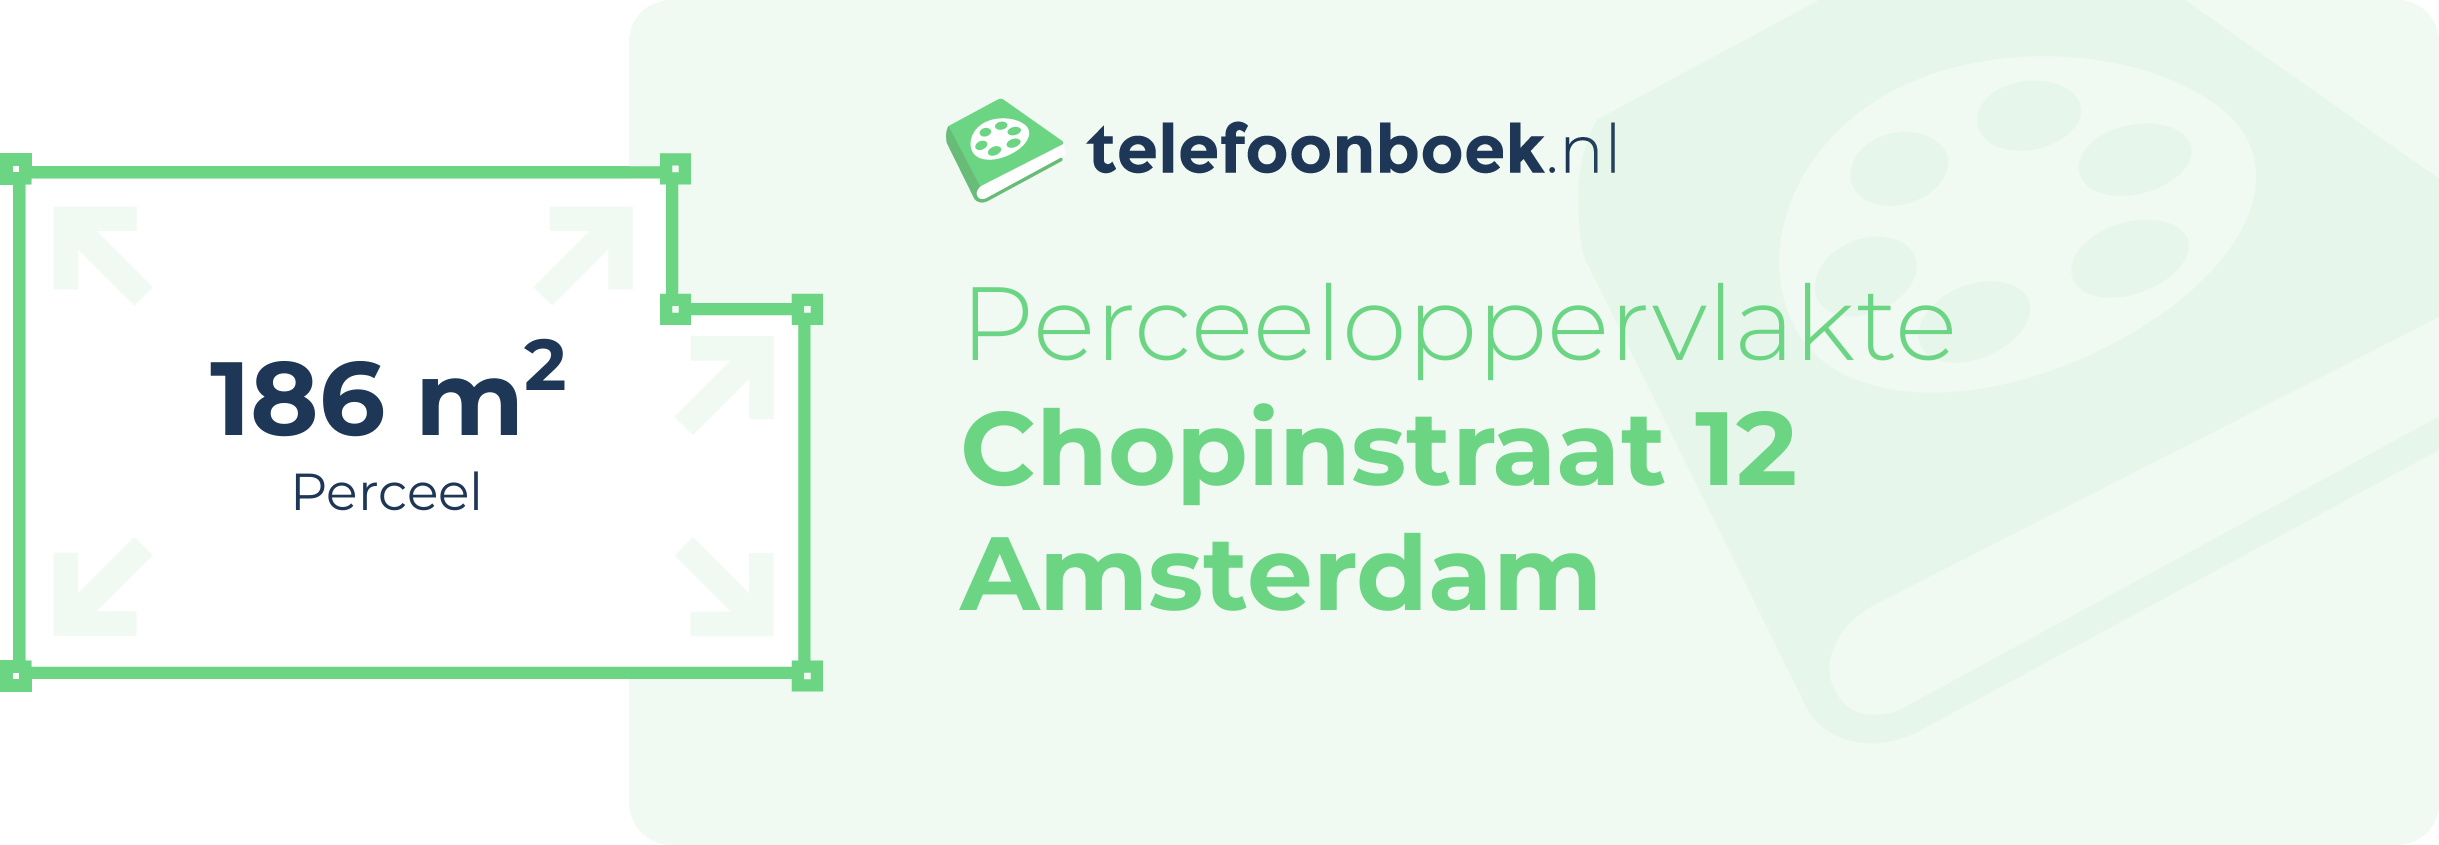 Perceeloppervlakte Chopinstraat 12 Amsterdam